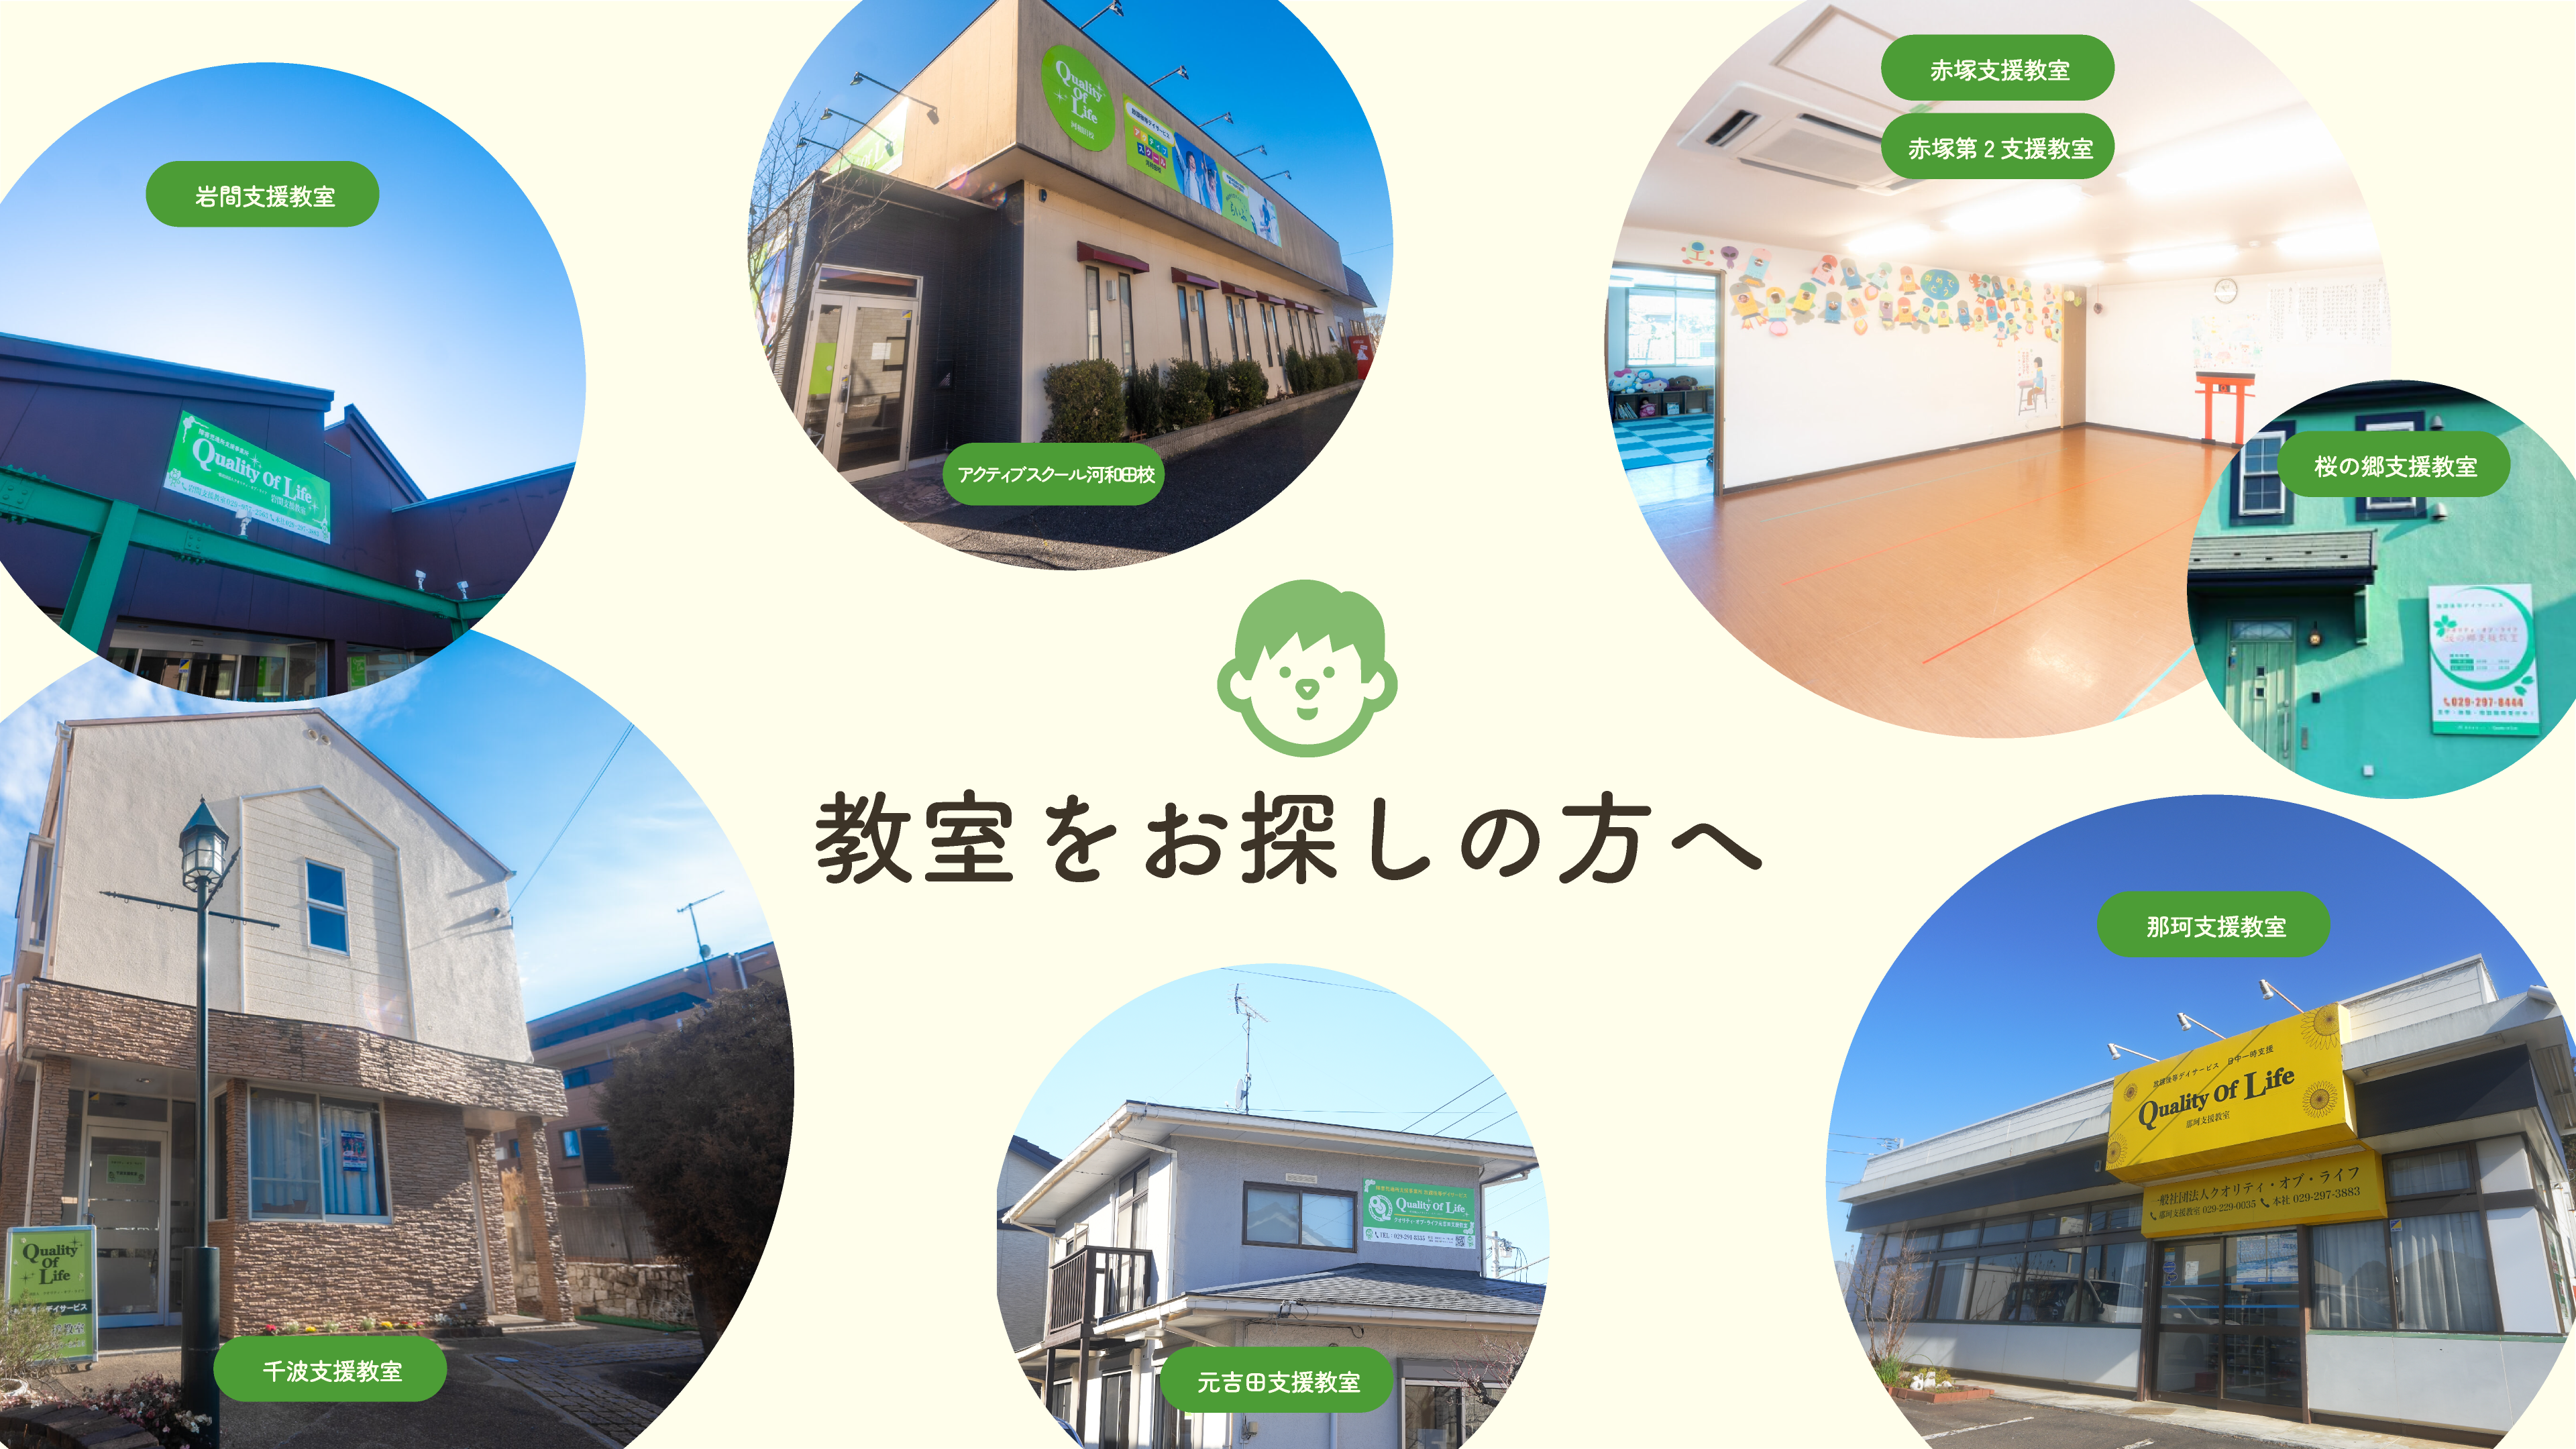 茨城県水戸市にある福祉を中心している会社、クオリティオブライフグループの中の教室一覧